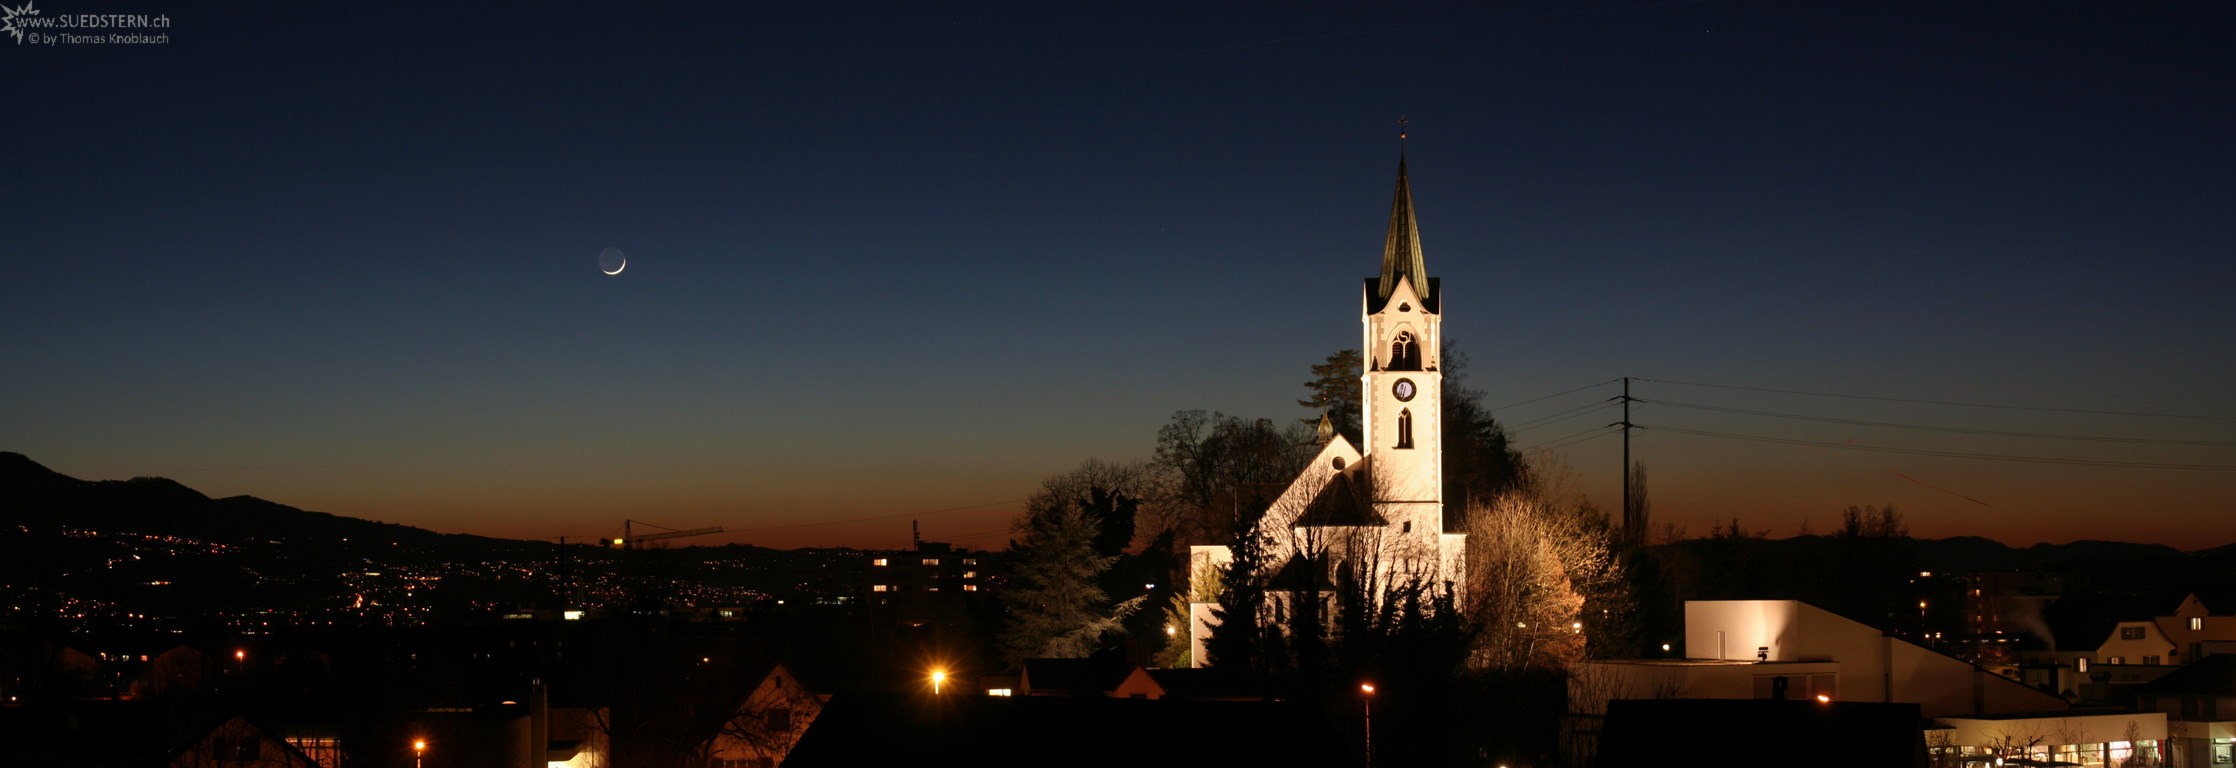 2008-02-08 - Panoramic Sundown with Moon and Church, Jona, Switzerland